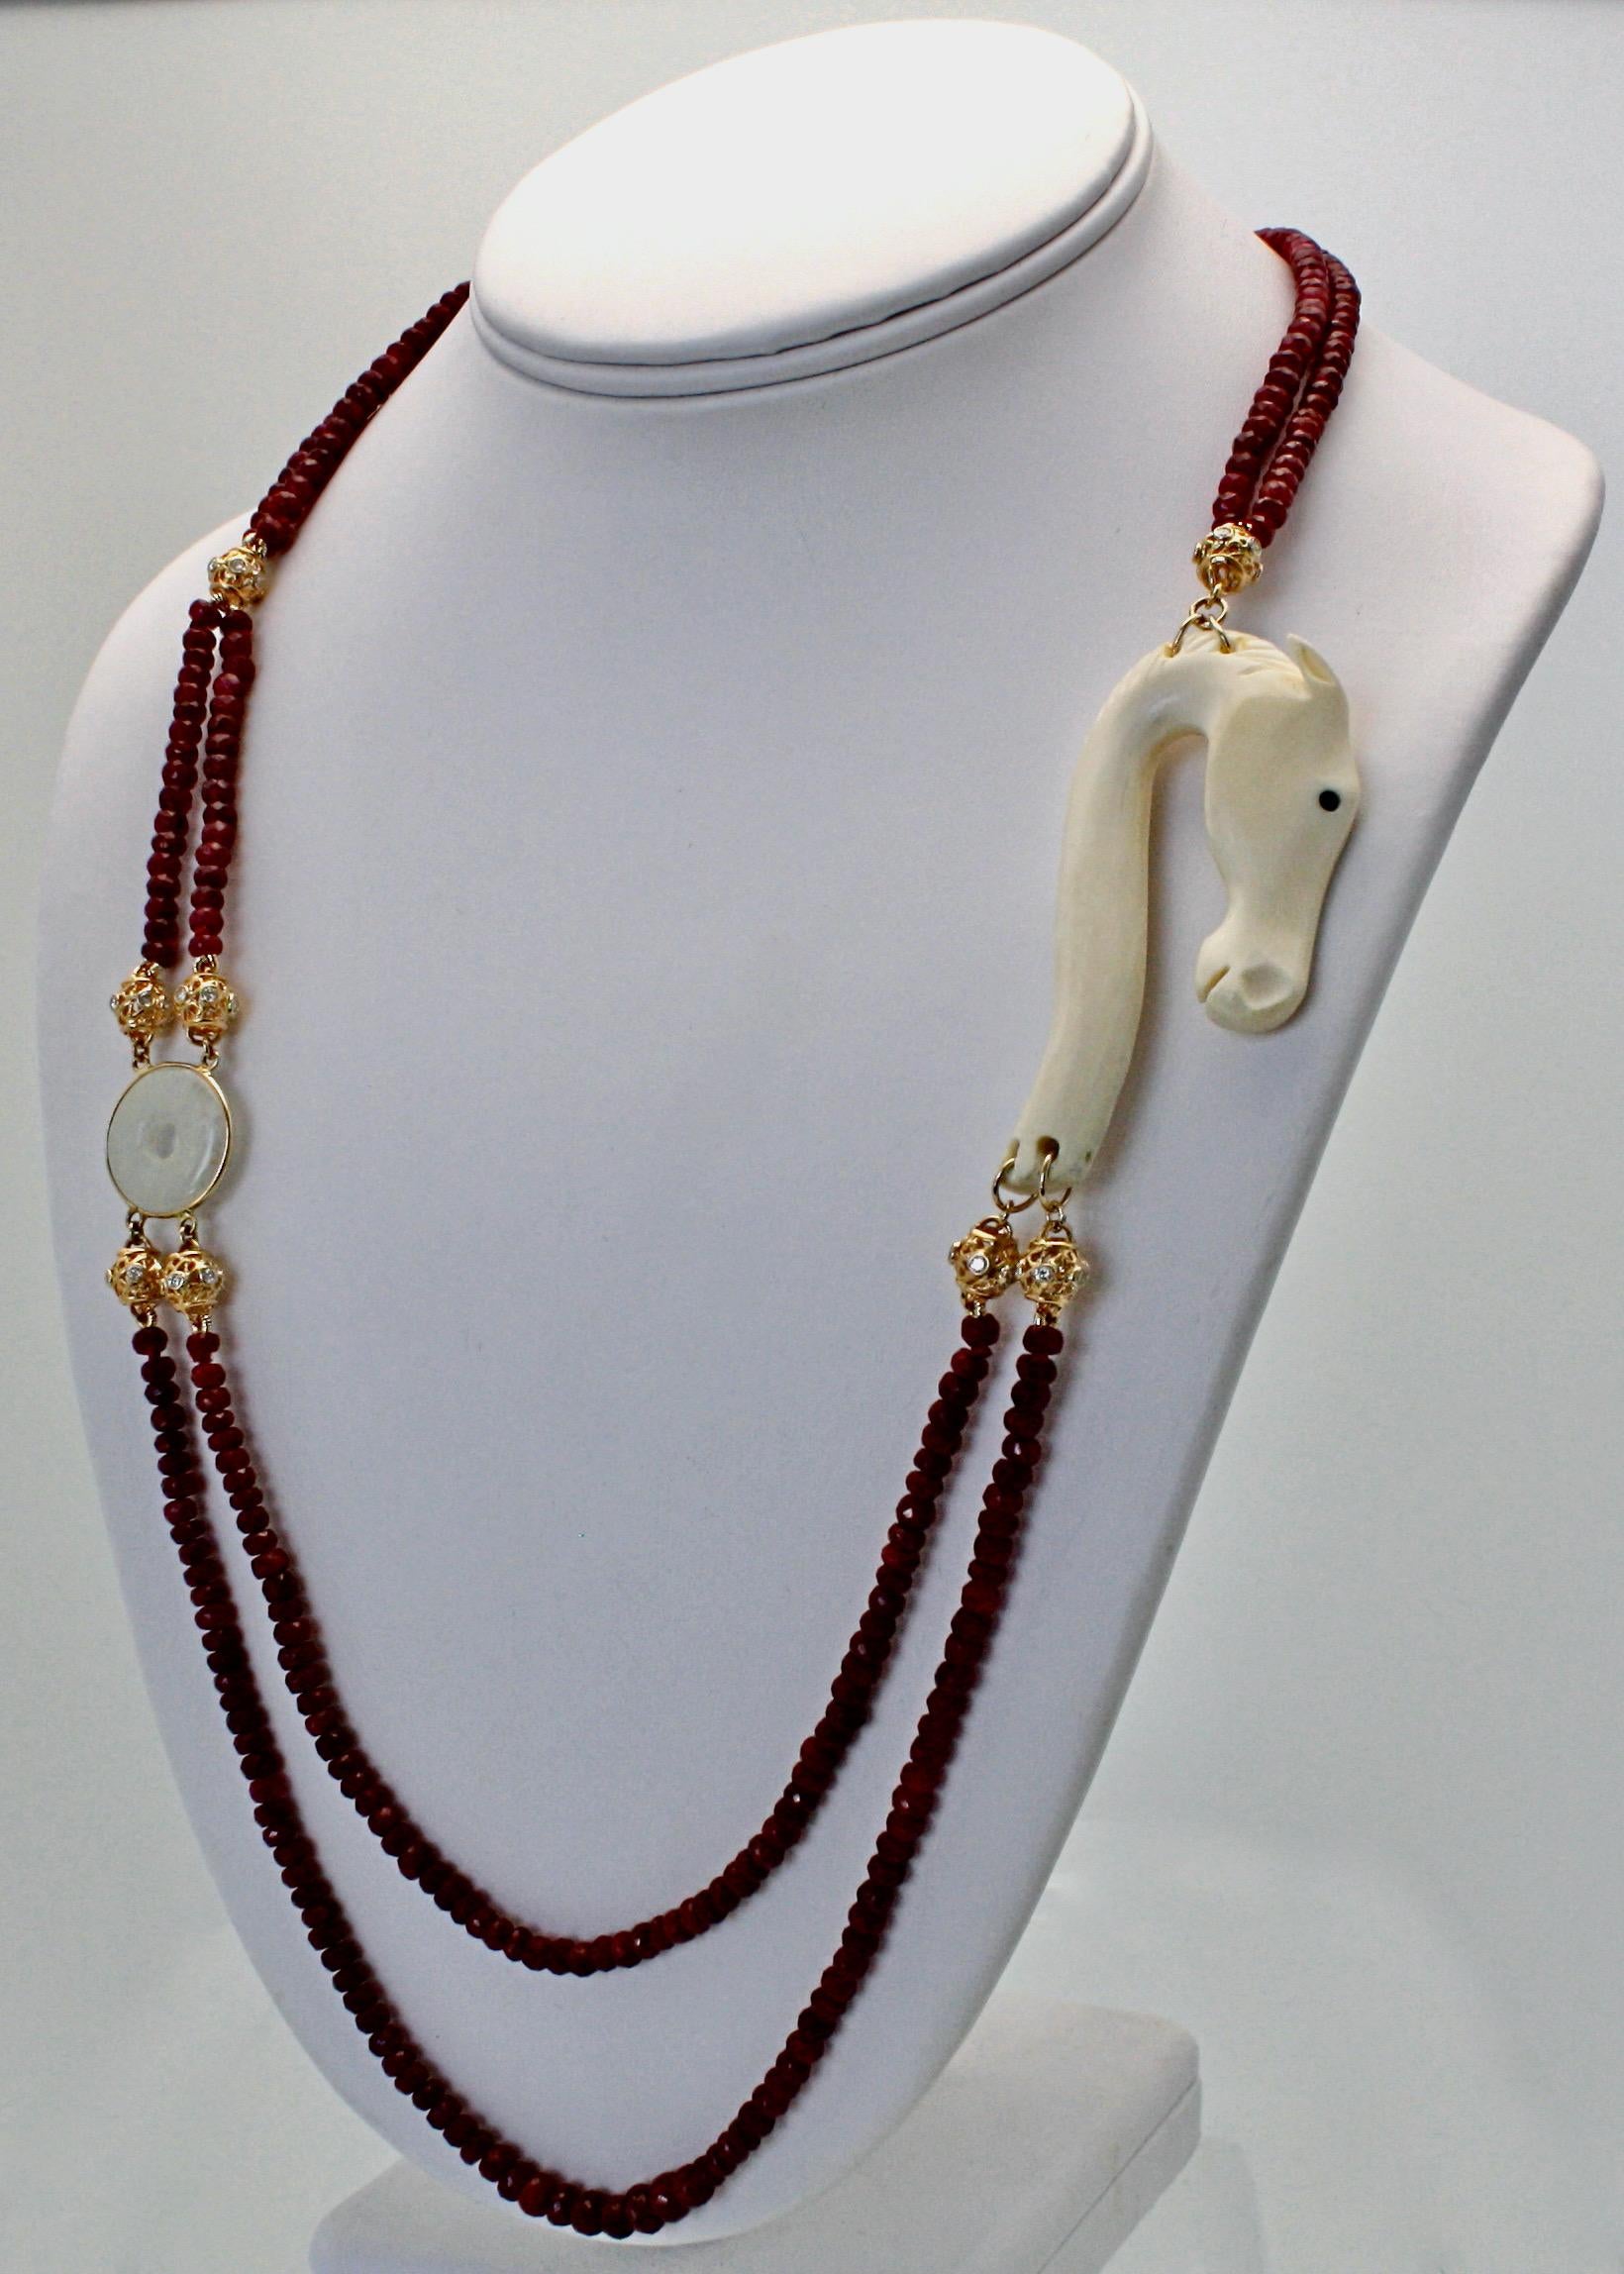 Diese wunderschöne Perlenkette ist eine Sonderanfertigung und ein Unikat.  Es verfügt über facettierte Rubinperlen Die Rubinperlen bilden eine doppelreihige Halskette, da es sich um  2 Stränge von Rubinperlen, die in der Mitte und eine einzelne